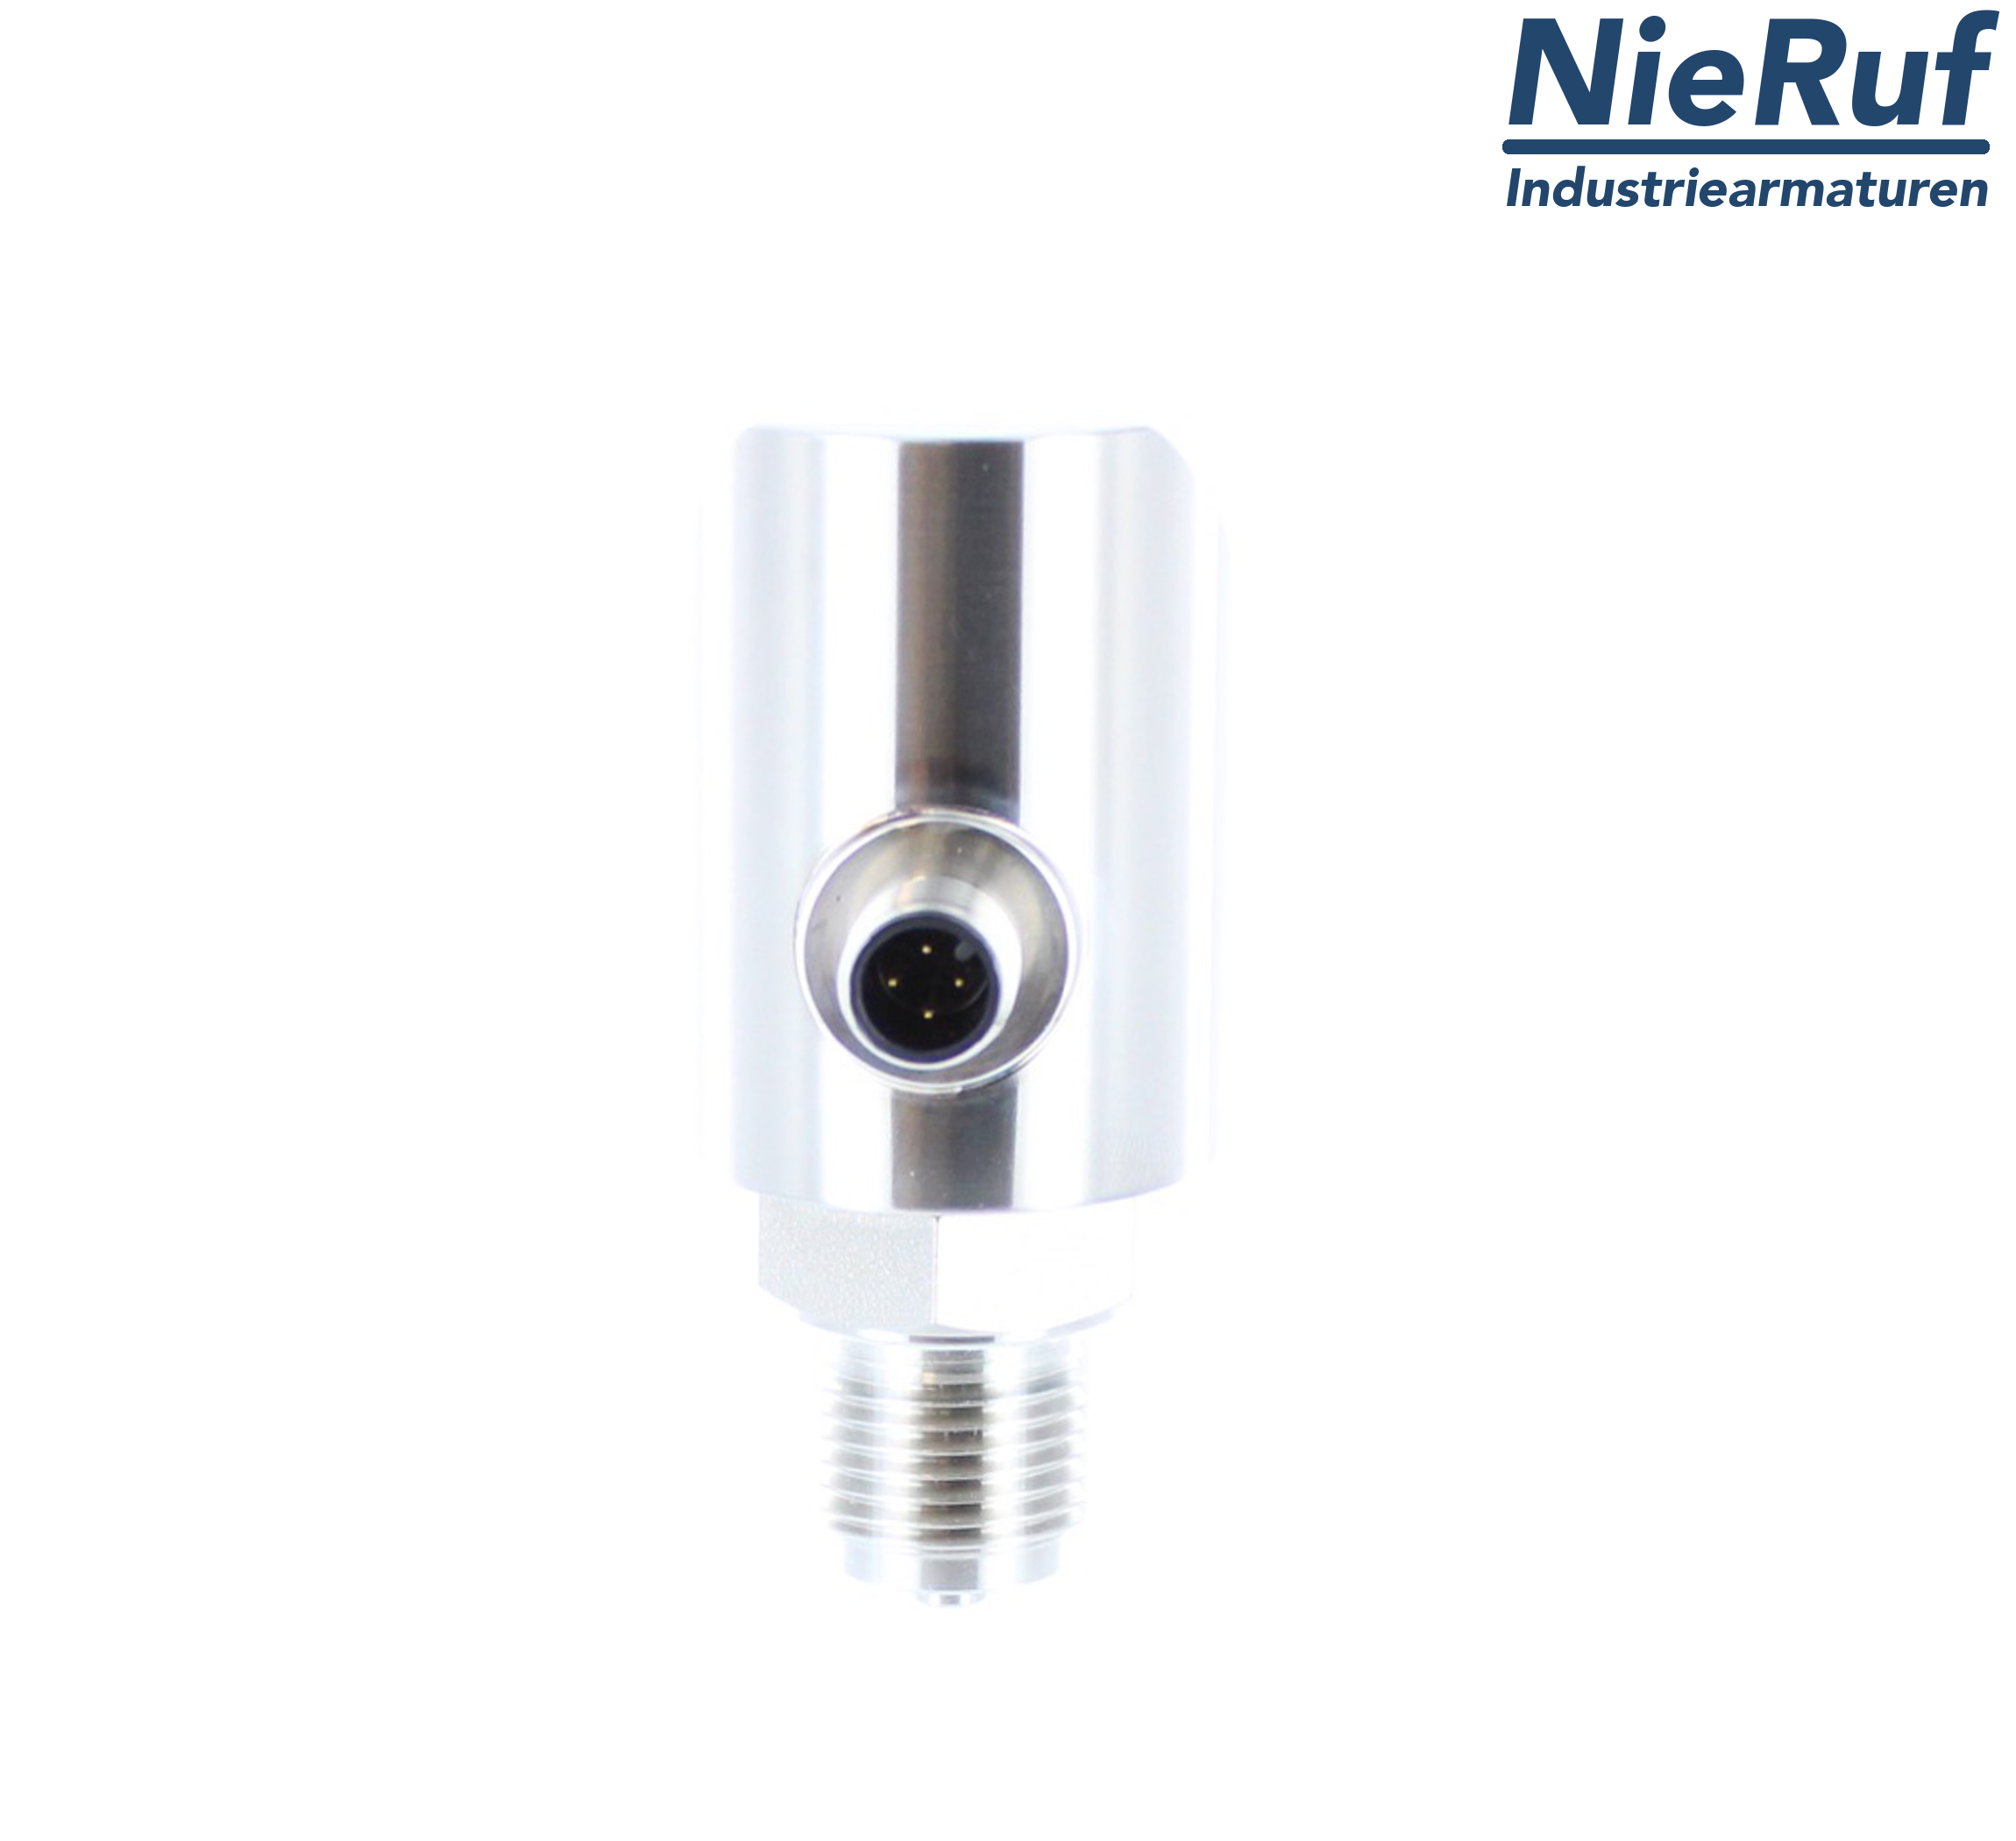 digital pressure sensor G 1/2" B 4-wire: 1xPNP, 1x4 - 20mA, Desina FPM 0,0 - 4,0 bar